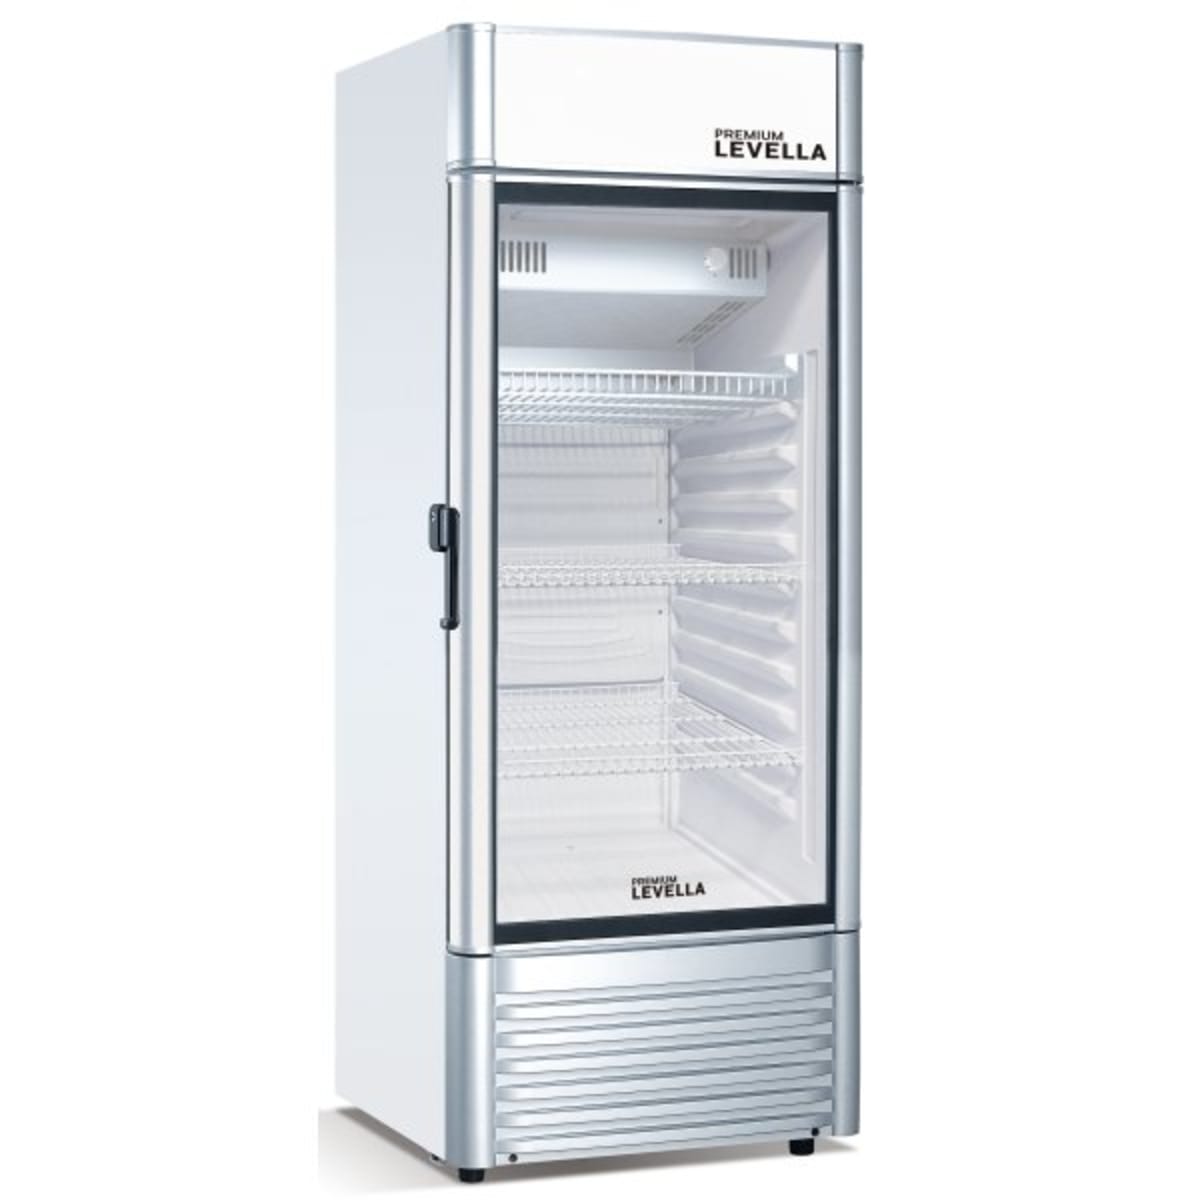 Congeladores horizontales Archives - Premium Levella